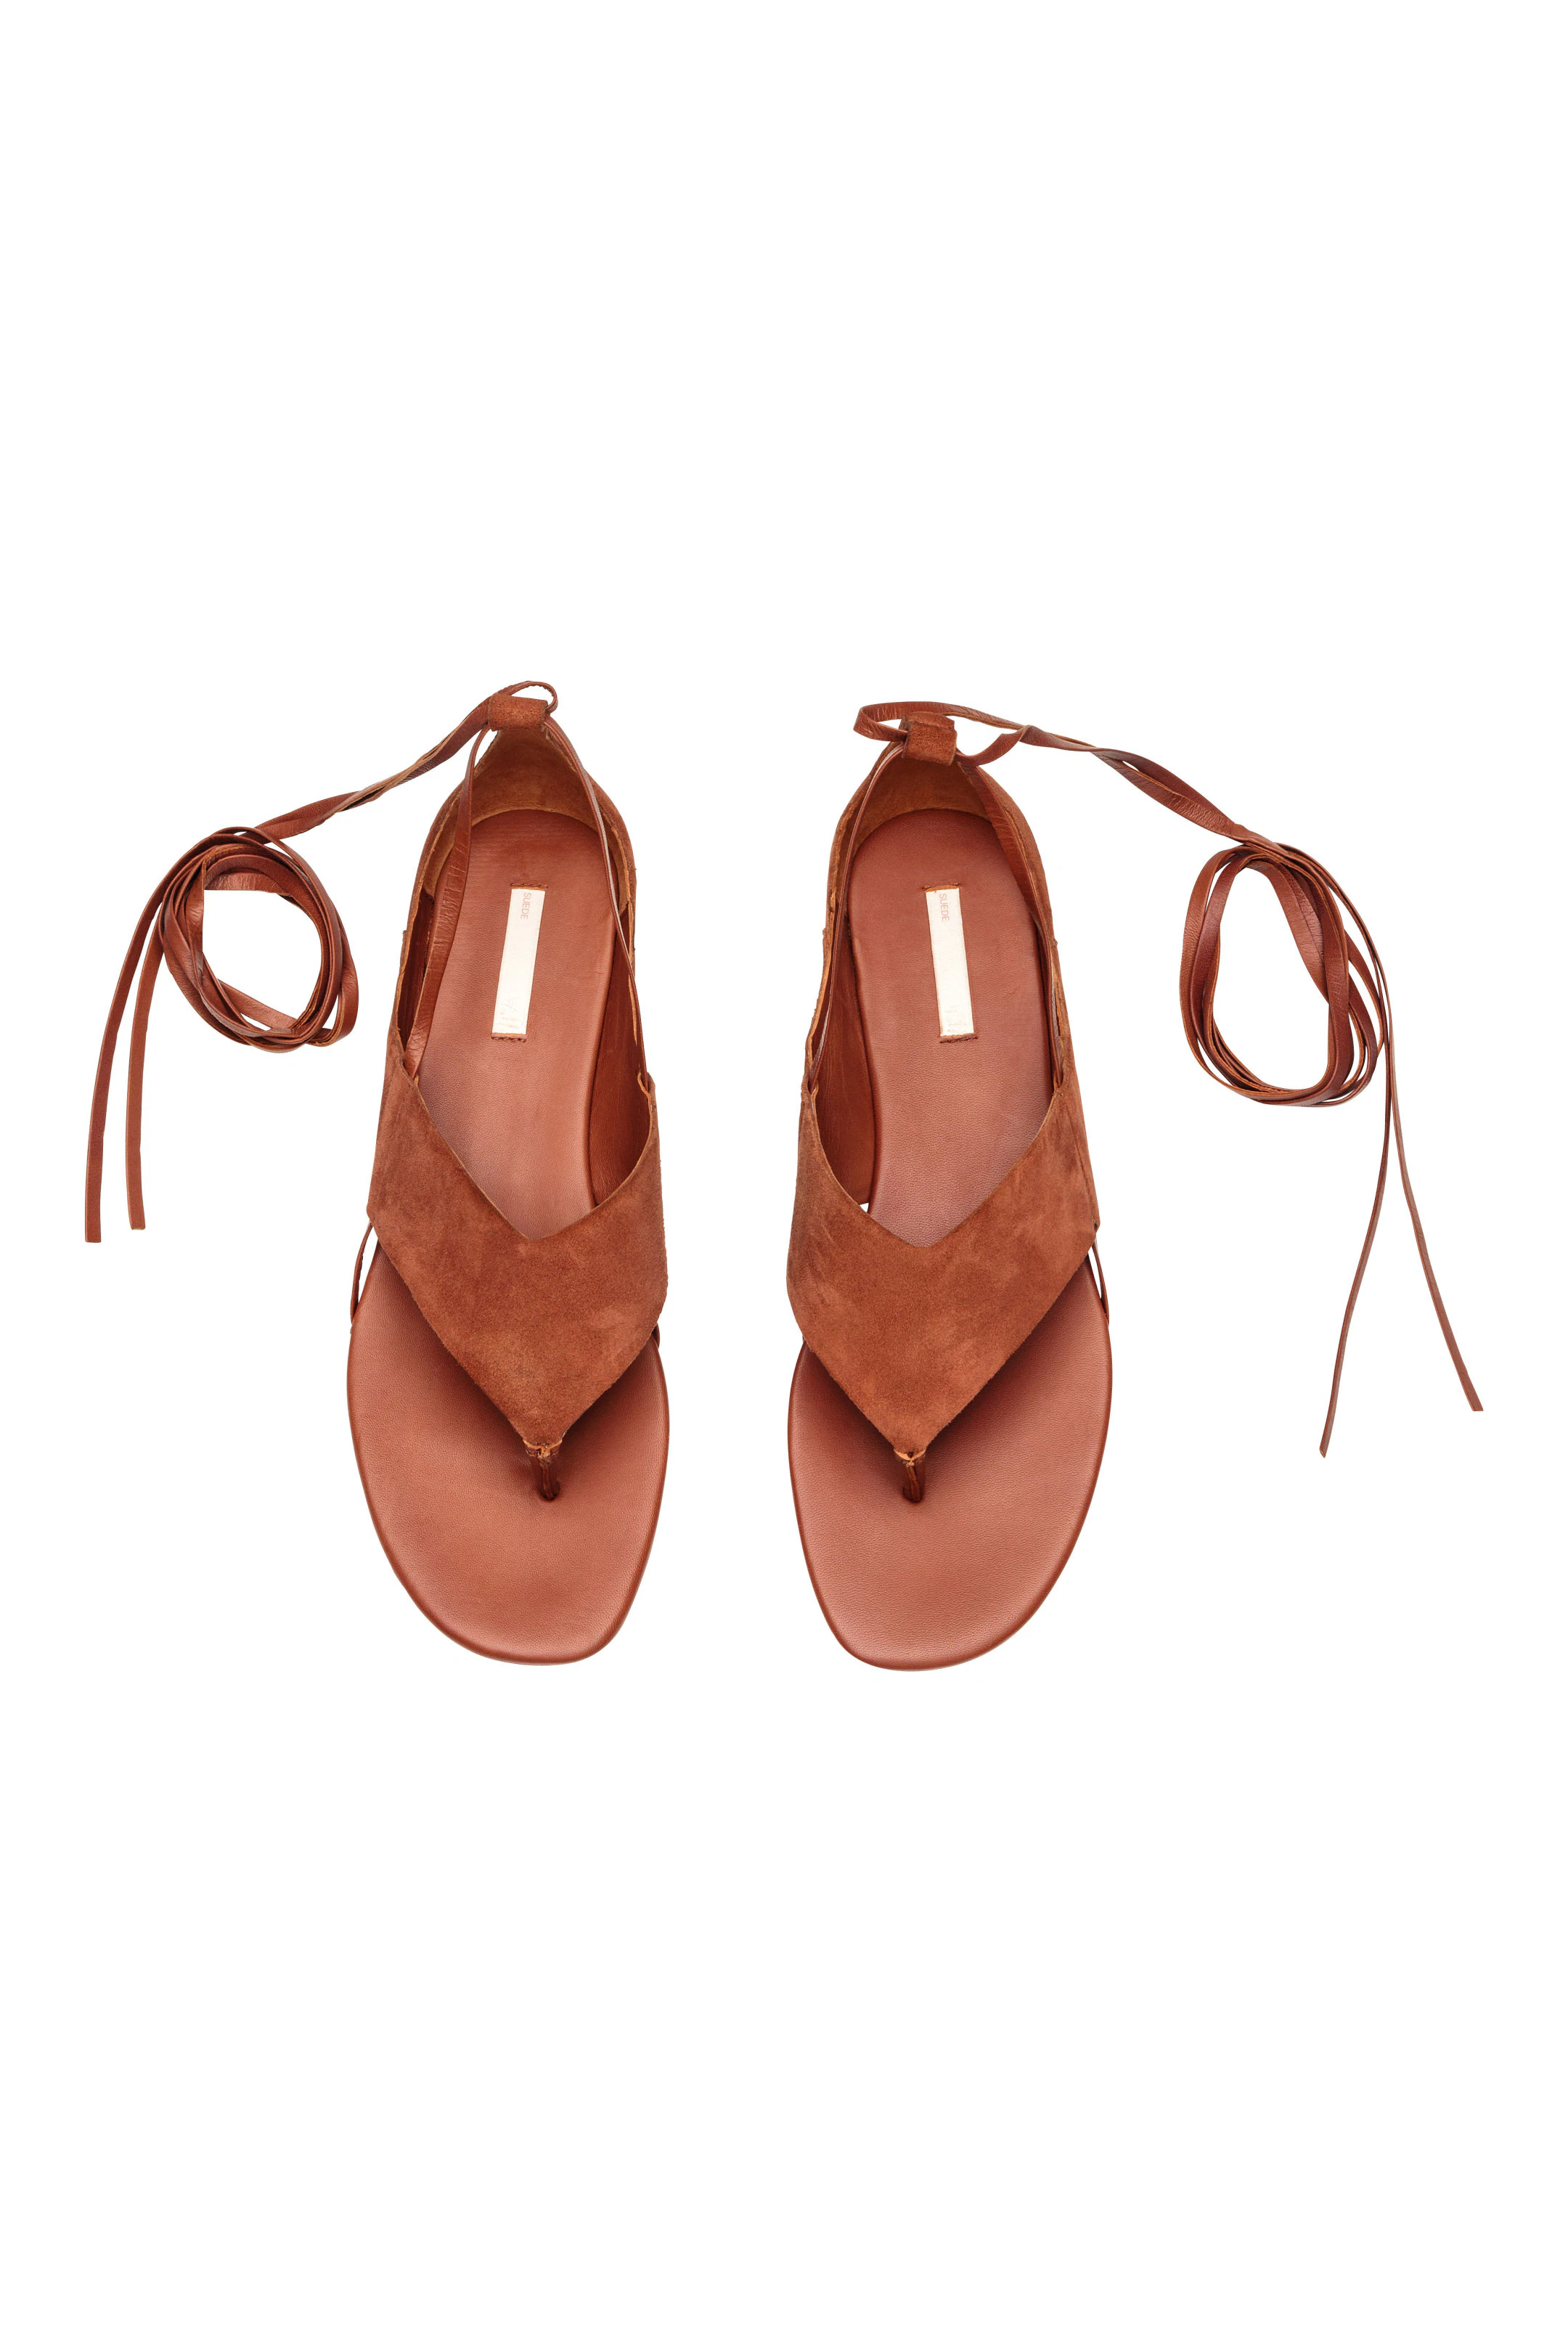 12 sandalias planas pero con algo en común: son de rebajas, alargan las y son ultra cómodas | Mujer Hoy